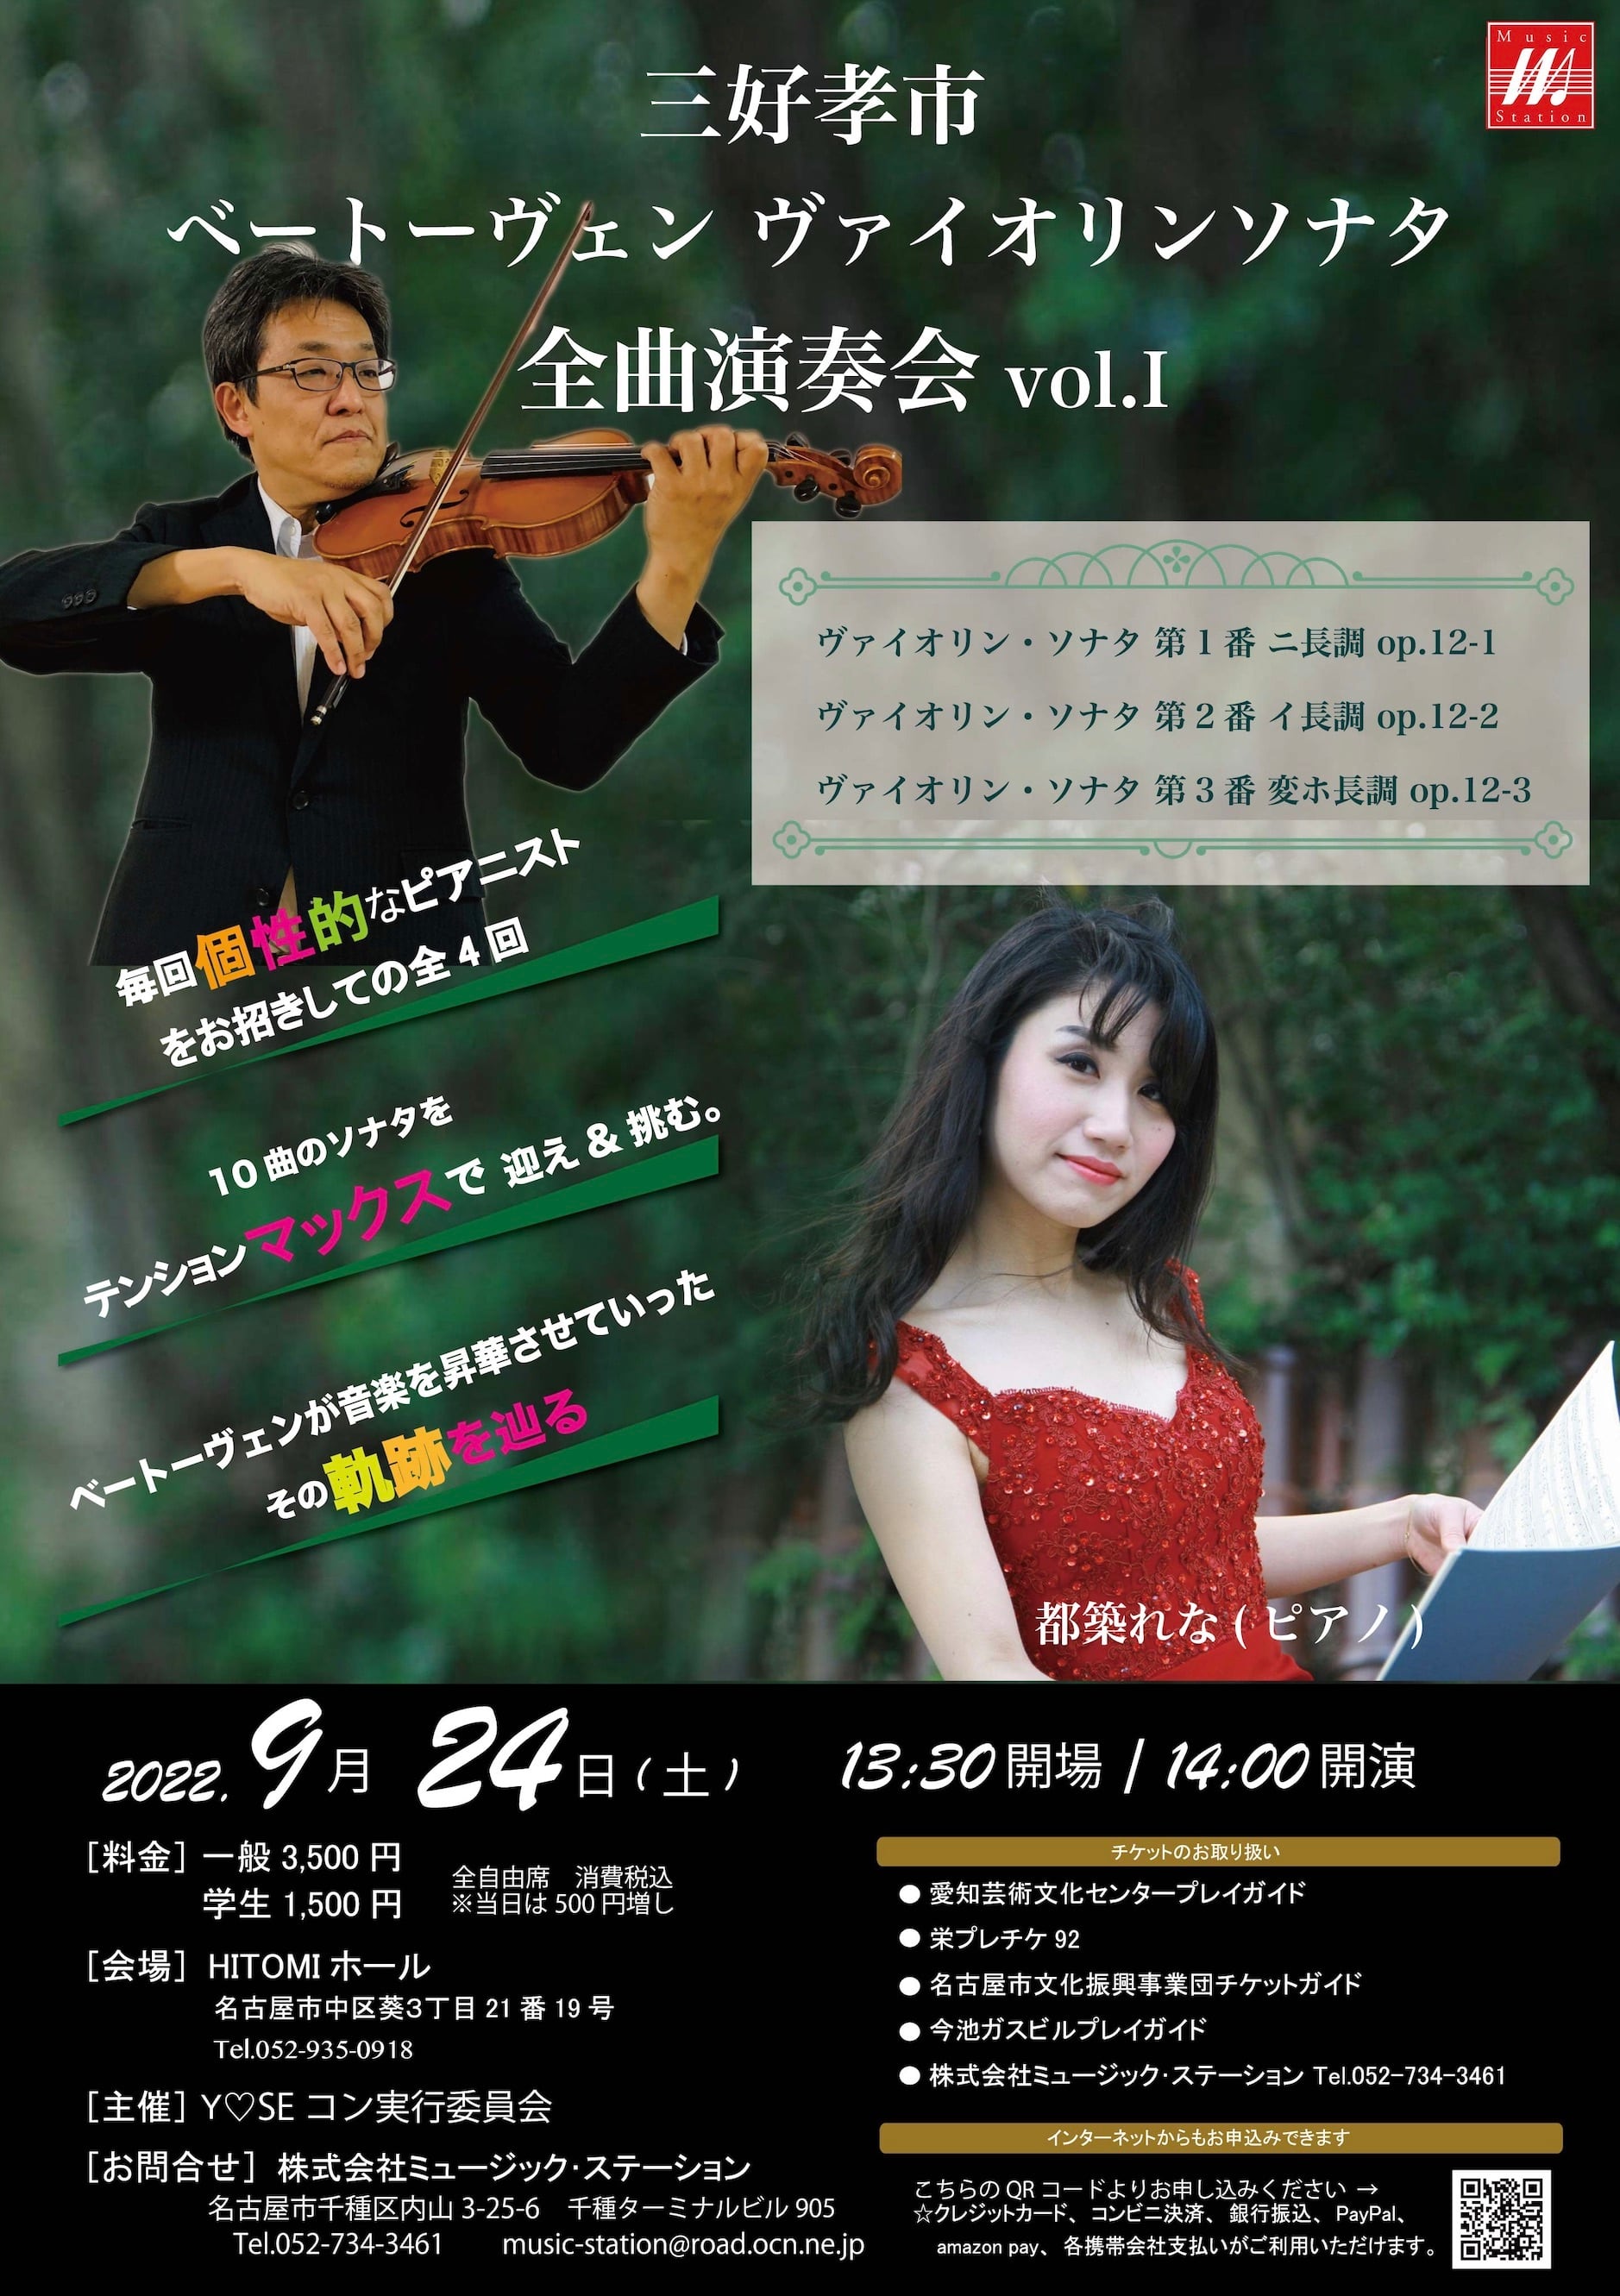 2022年9月24日(土)　Music　vol.1@HITOMIホール　三好孝市(Vn)ベートーヴェンソナタ全曲演奏会　Station